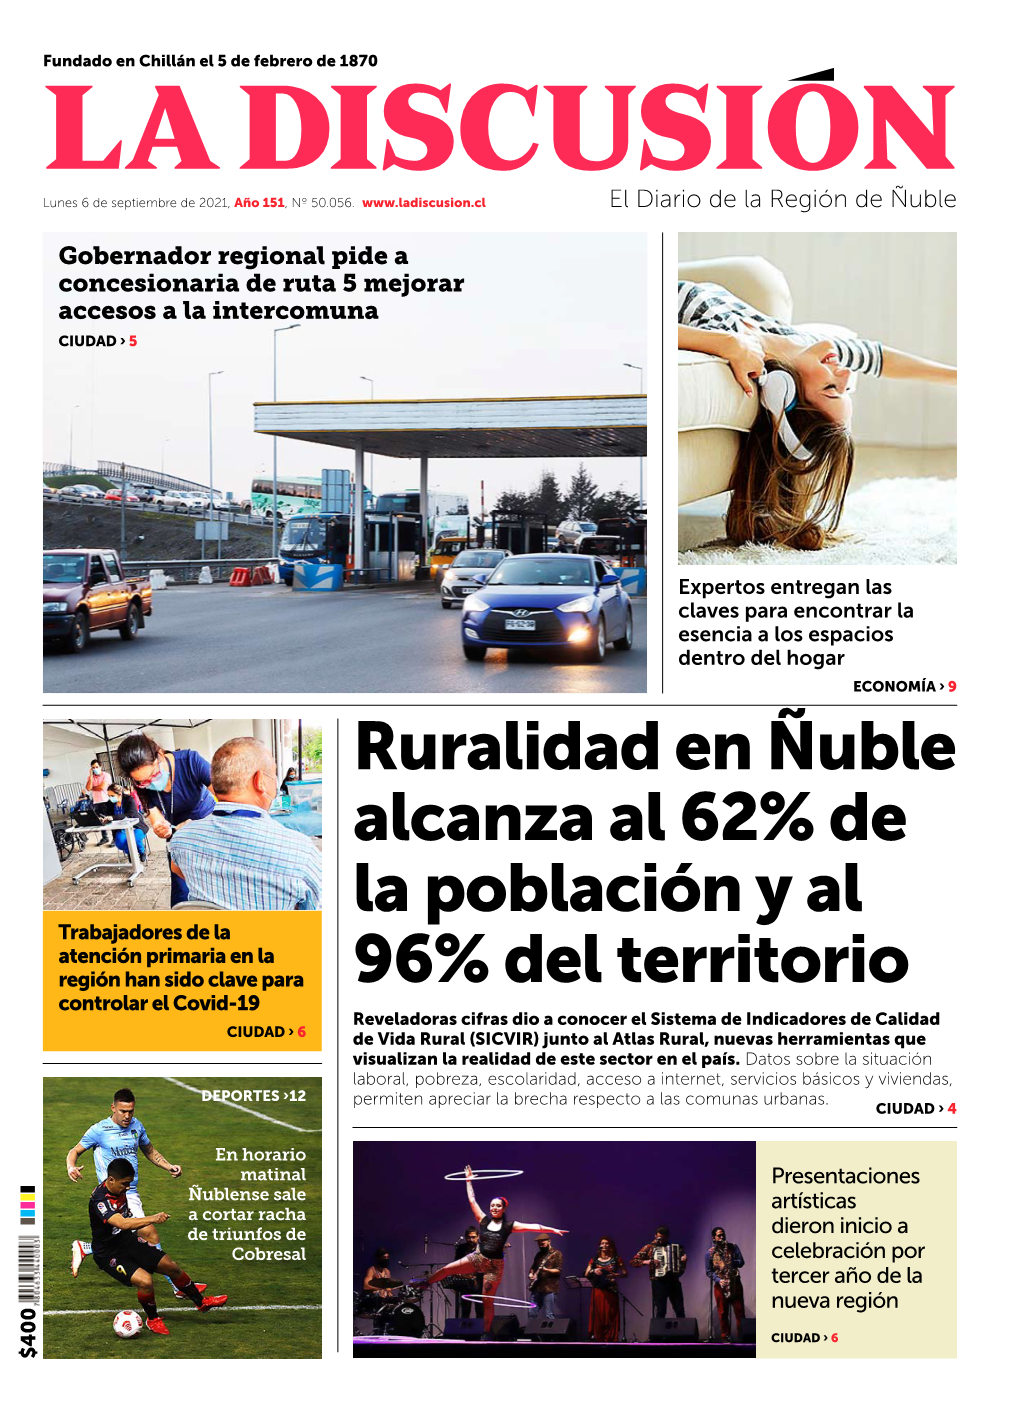 Ruralidad En Ñuble Alcanza Al 62% De La Población Y Al 96% Del Territorio